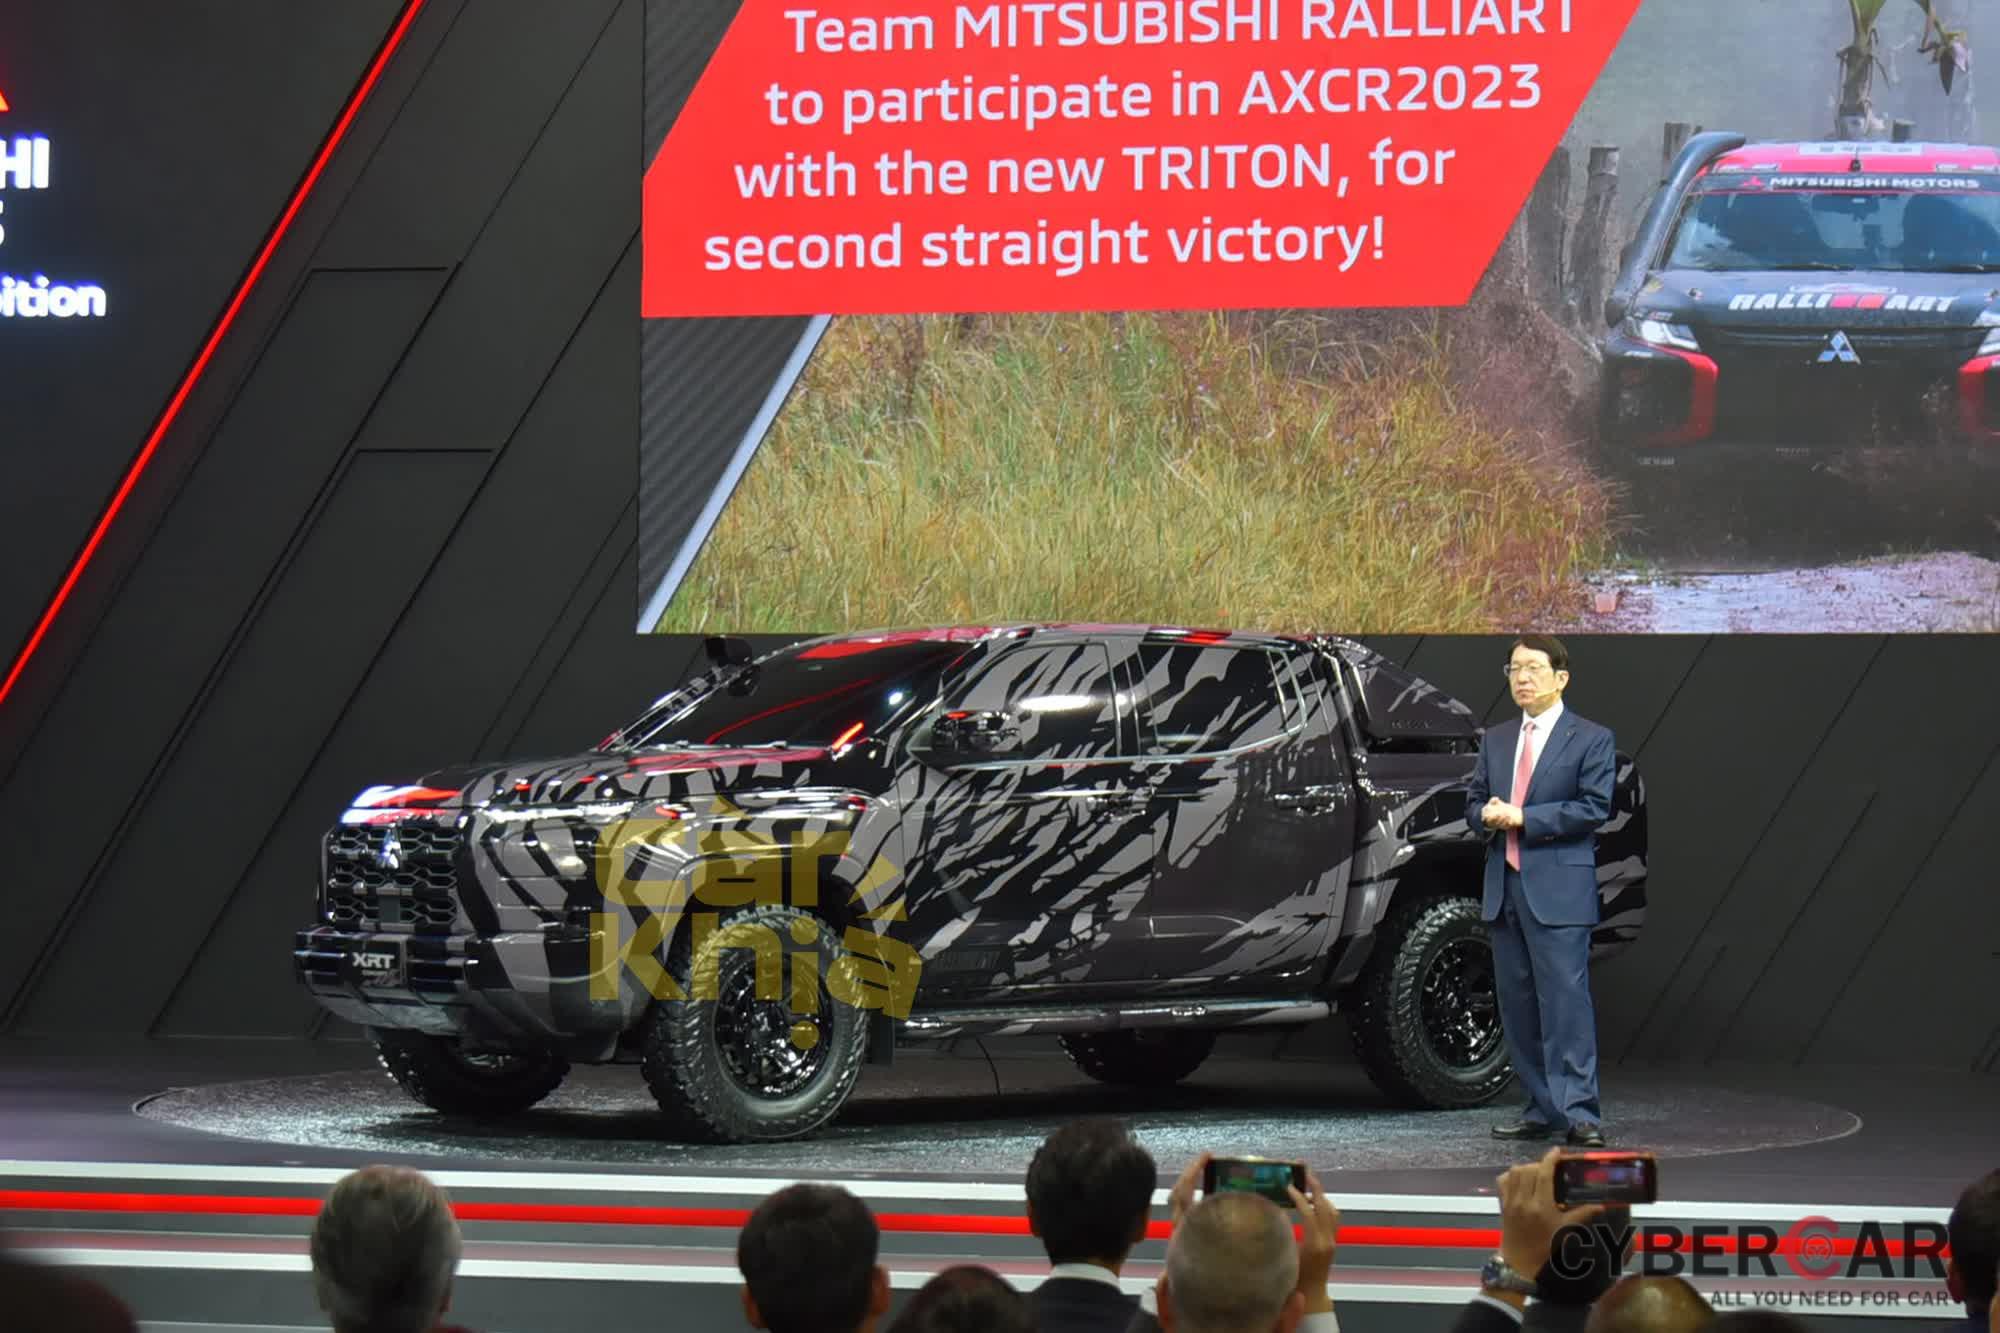 Ra mắt Mitsubishi XRT Concept - Bản xem trước của Triton thế hệ mới: Đẹp và ngầu hơn hẳn, sản xuất trước T3/2024 - Ảnh 3.